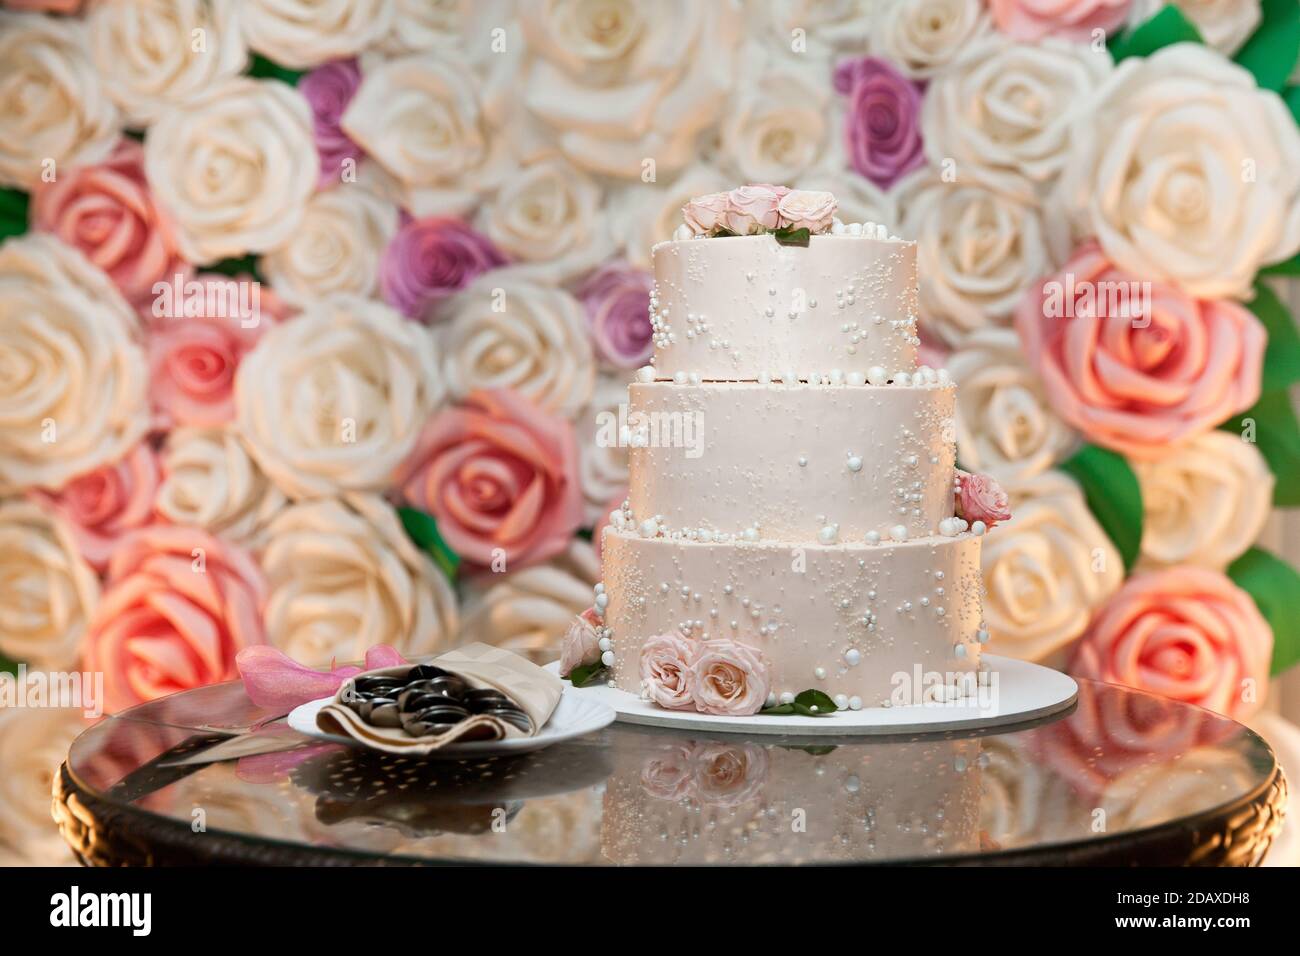 Der Hochzeitstorte. Weißer Kuchen mit Rosen verziert. Schönes Dessert für den Urlaub Stockfoto